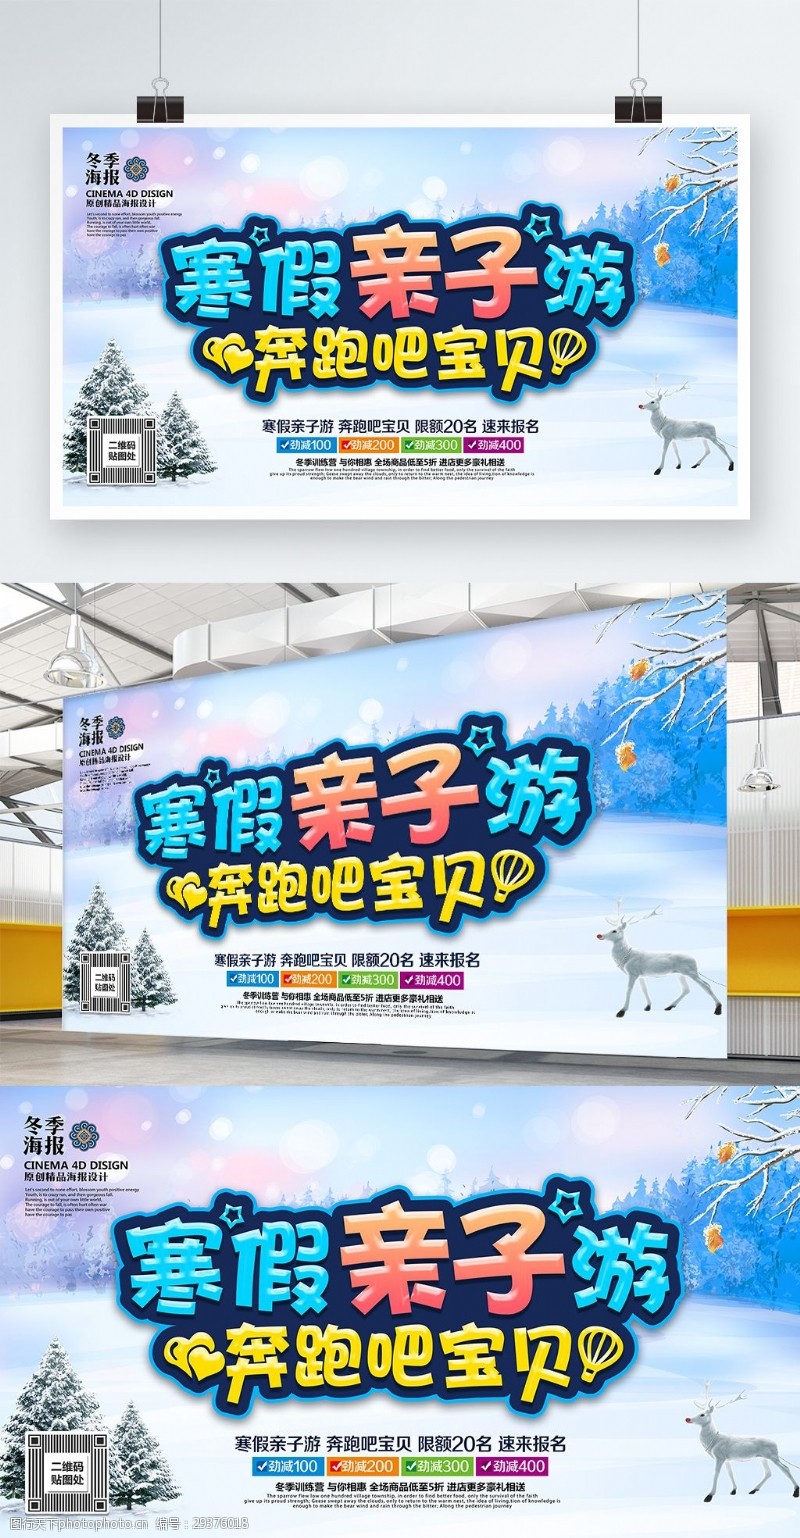 寒假活动创意炫彩寒假亲子游寒假旅游宣传海报PSD